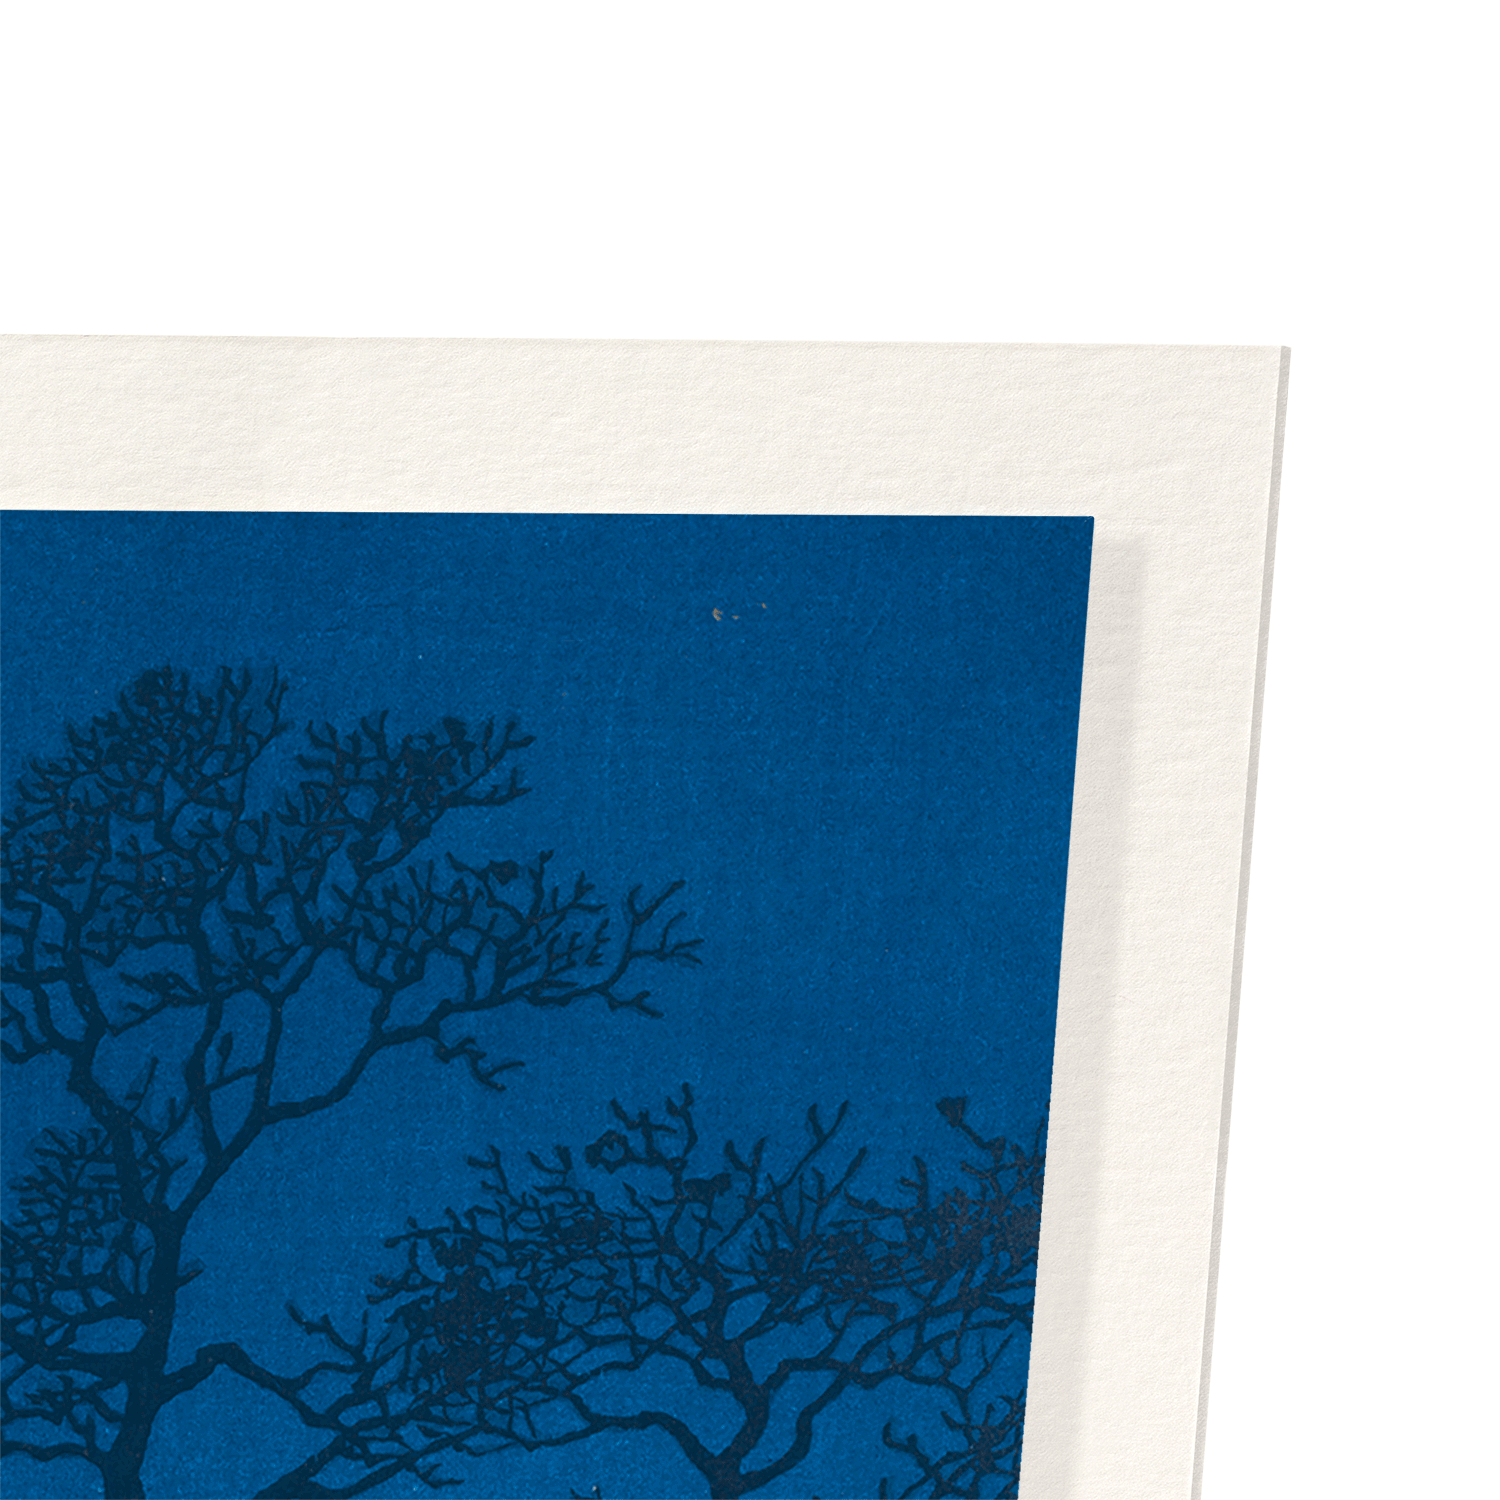 WINTER MOON OVER TOYAMA PLAIN: Japanese Art Print